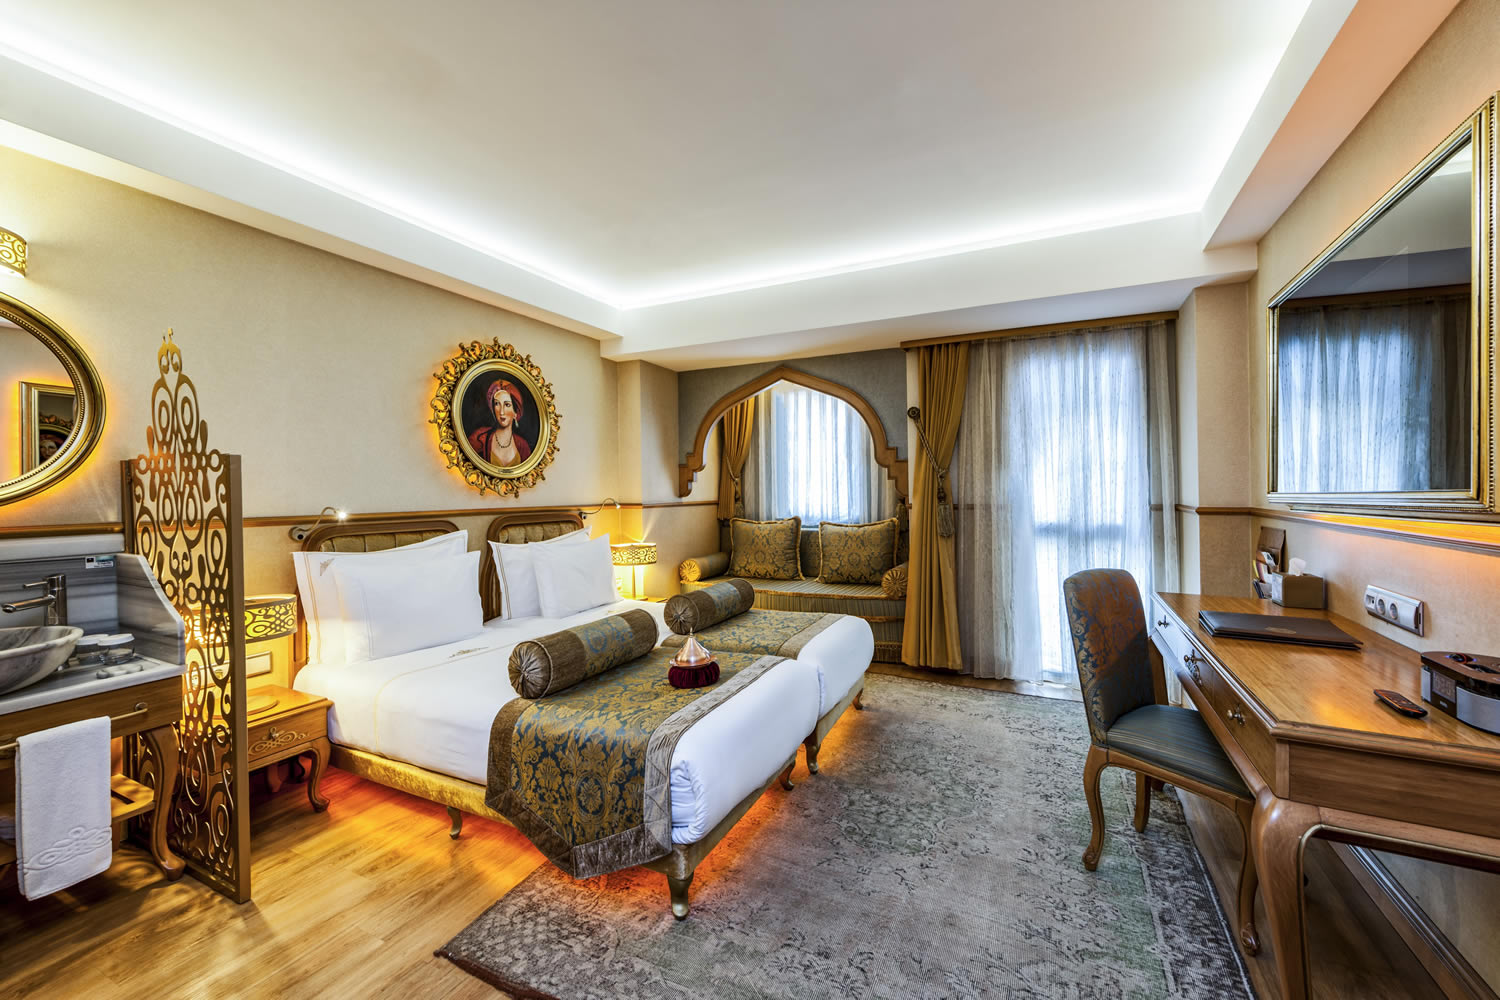 Русскоговорящие отели. Отель Султания в Стамбуле. Султания отель Султанахмет. Отель Султанахмет в Стамбуле 5 звезд. Sultania Hotel 5.